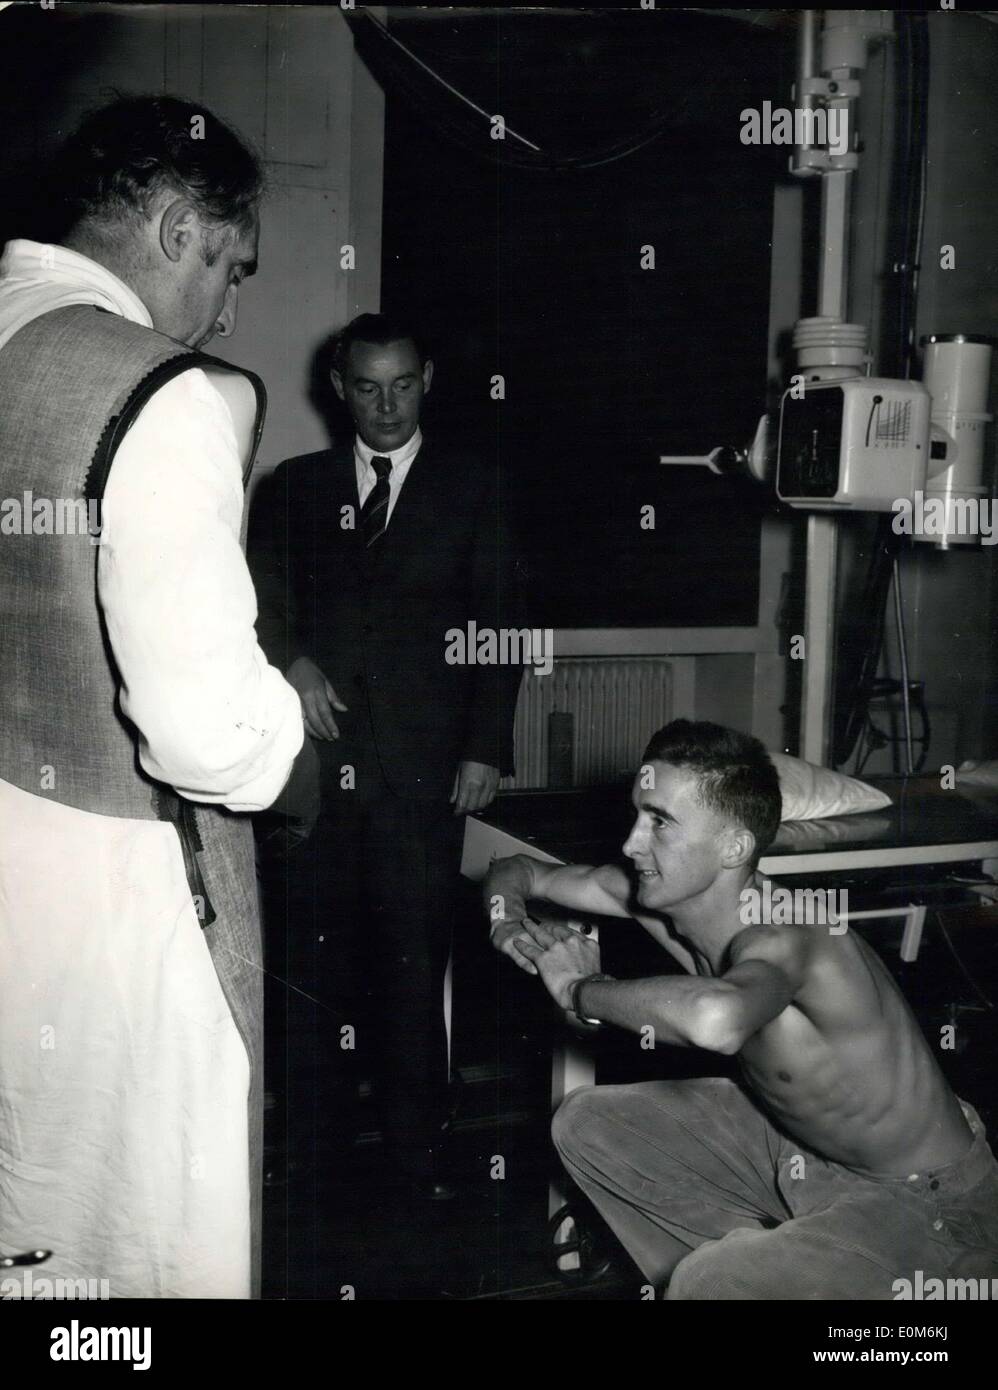 17 octobre 1953 - Tests du médecin allemand Pirie Coeur Dr. Hans Reindell, un médecin allemand, est célèbre pour ses recherches sur l'endurance humaine prétend être capable de prédire l'événement qui répondra le mieux à un athlète et le temps qu'il permettra d'atteindre si il a atteint son potentiel. Gordon Pirie, le célèbre coureur britannique, qui est d'un séjour à Freiberg, Allemagne, avec son entraîneur allemand Woldemar Gerschler,, a subi des tests par le médecin. Après les essais Dr. Reindell a dit : ''Pirie a le plus de coeur que j'ai jamais trouvé dans un sportif Banque D'Images